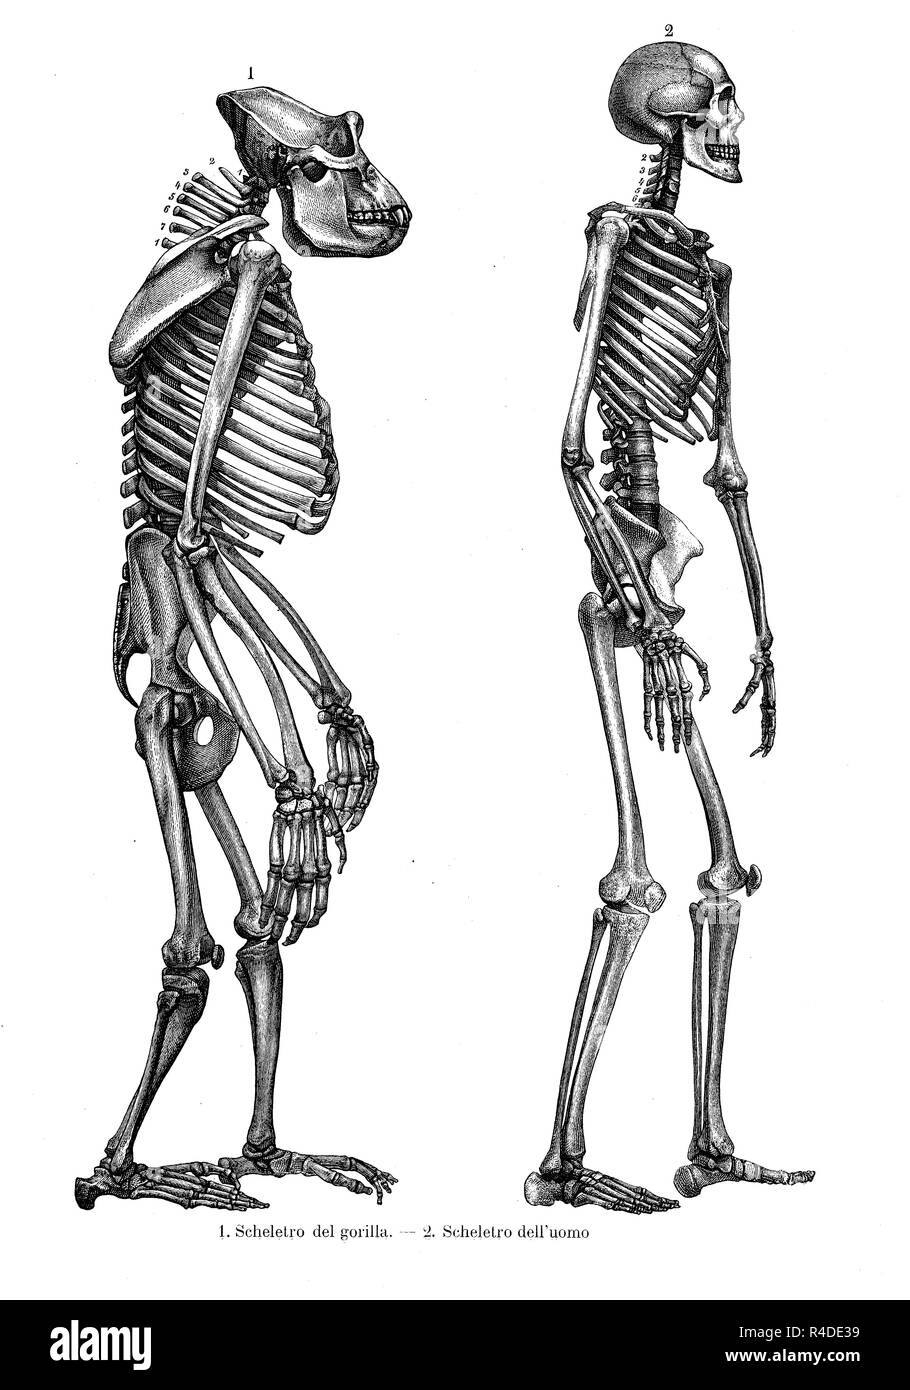 Vintage Abbildung: Anatomie, Vergleich zwischen Mensch und Gorilla Skelett Stockfoto